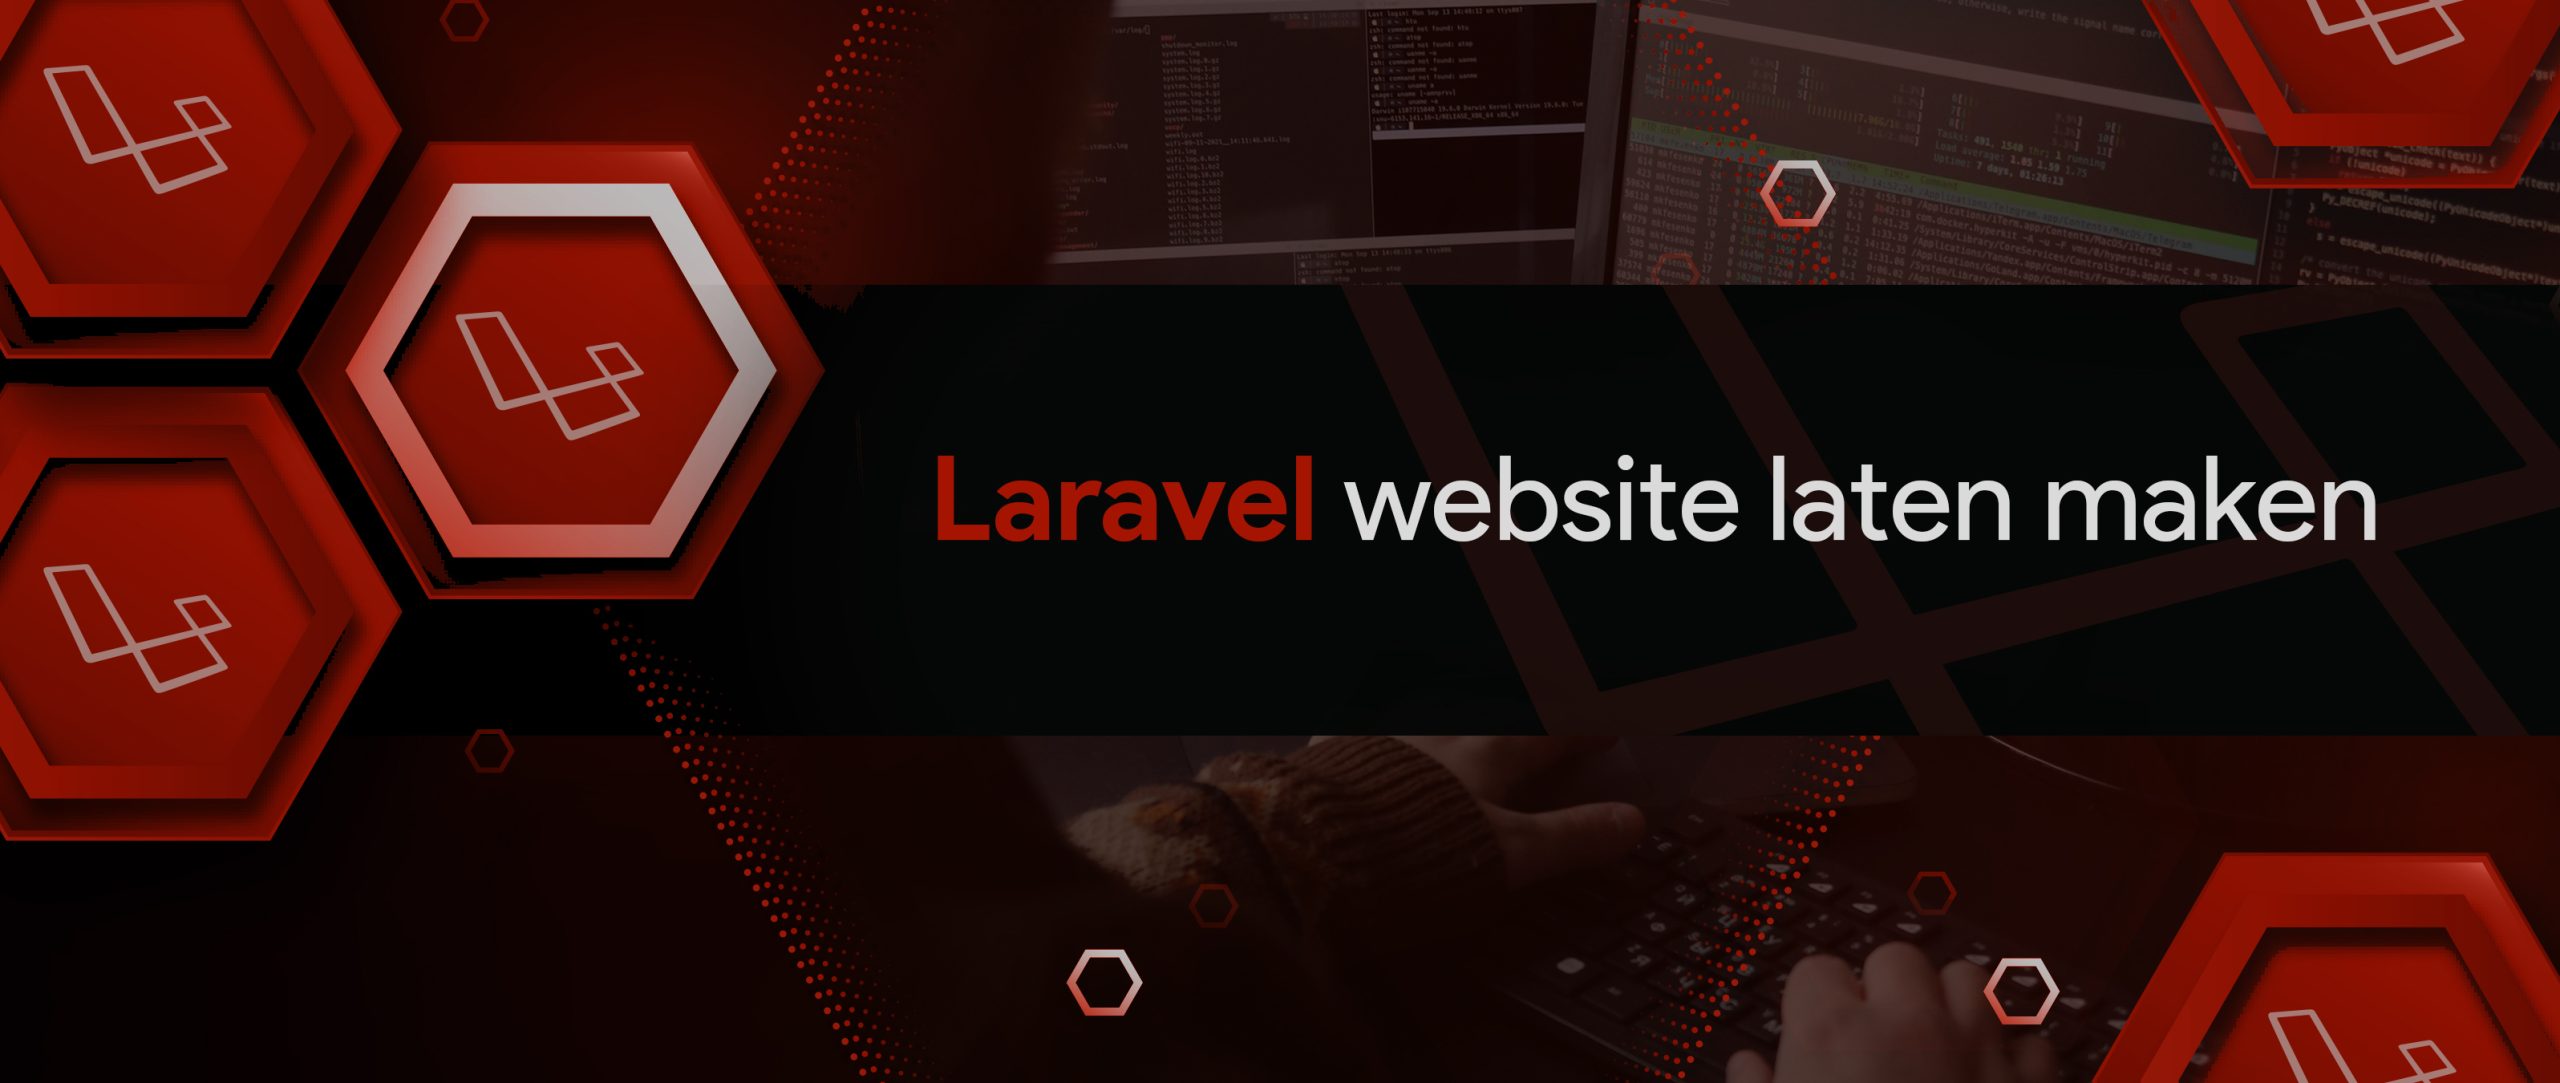 Laravel website laten maken